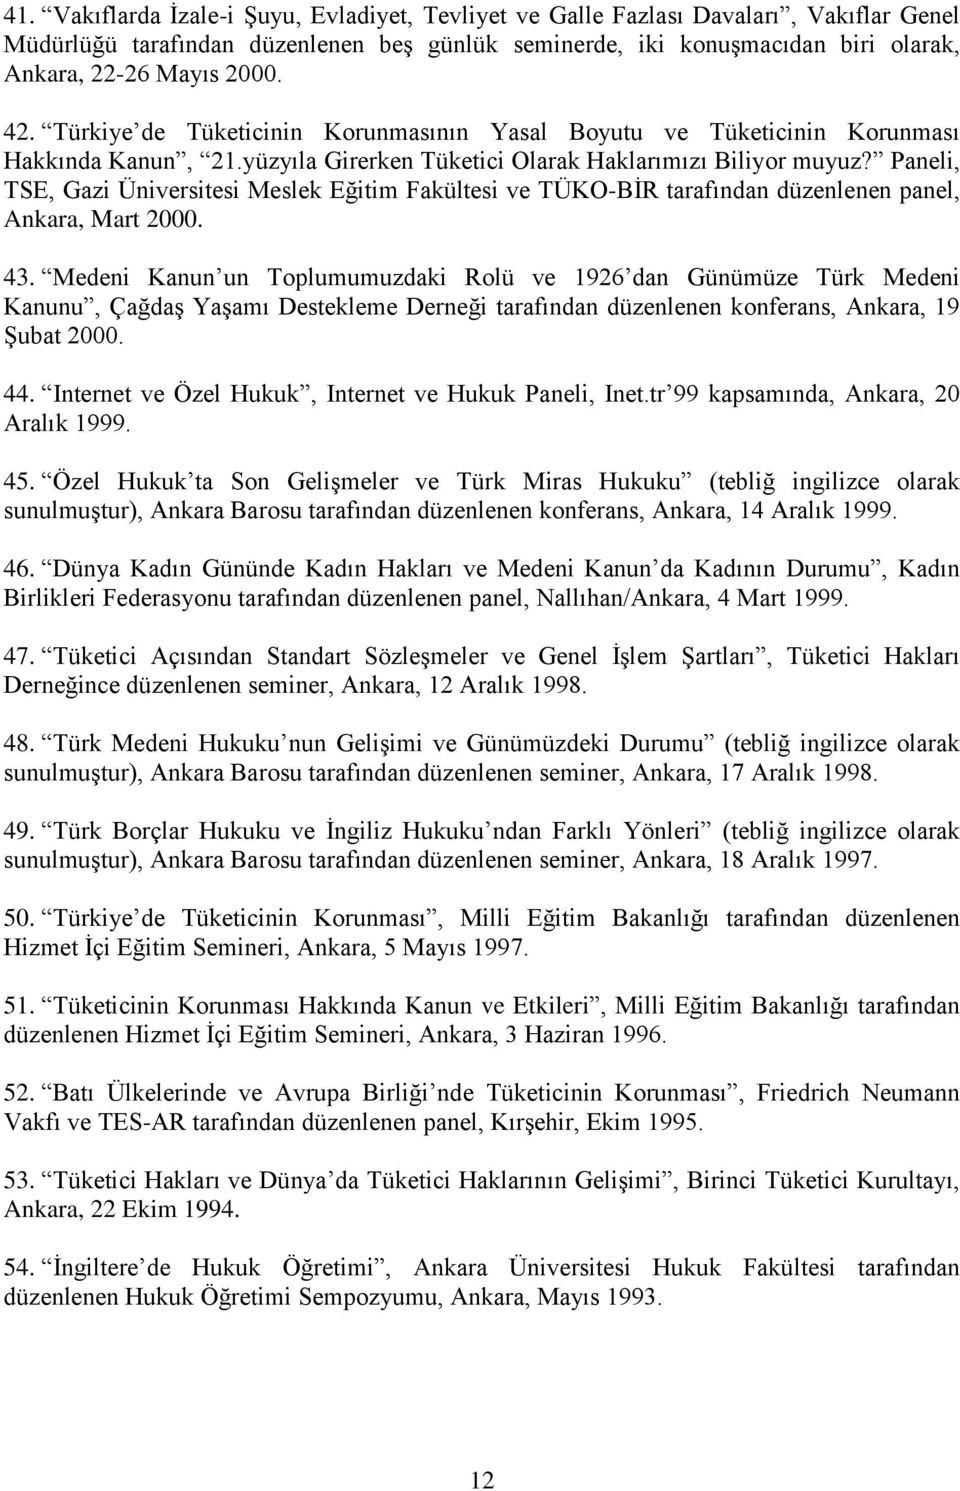 Paneli, TSE, Gazi Üniversitesi Meslek Eğitim Fakültesi ve TÜKO-BİR tarafından düzenlenen panel, Ankara, Mart 2000. 43.